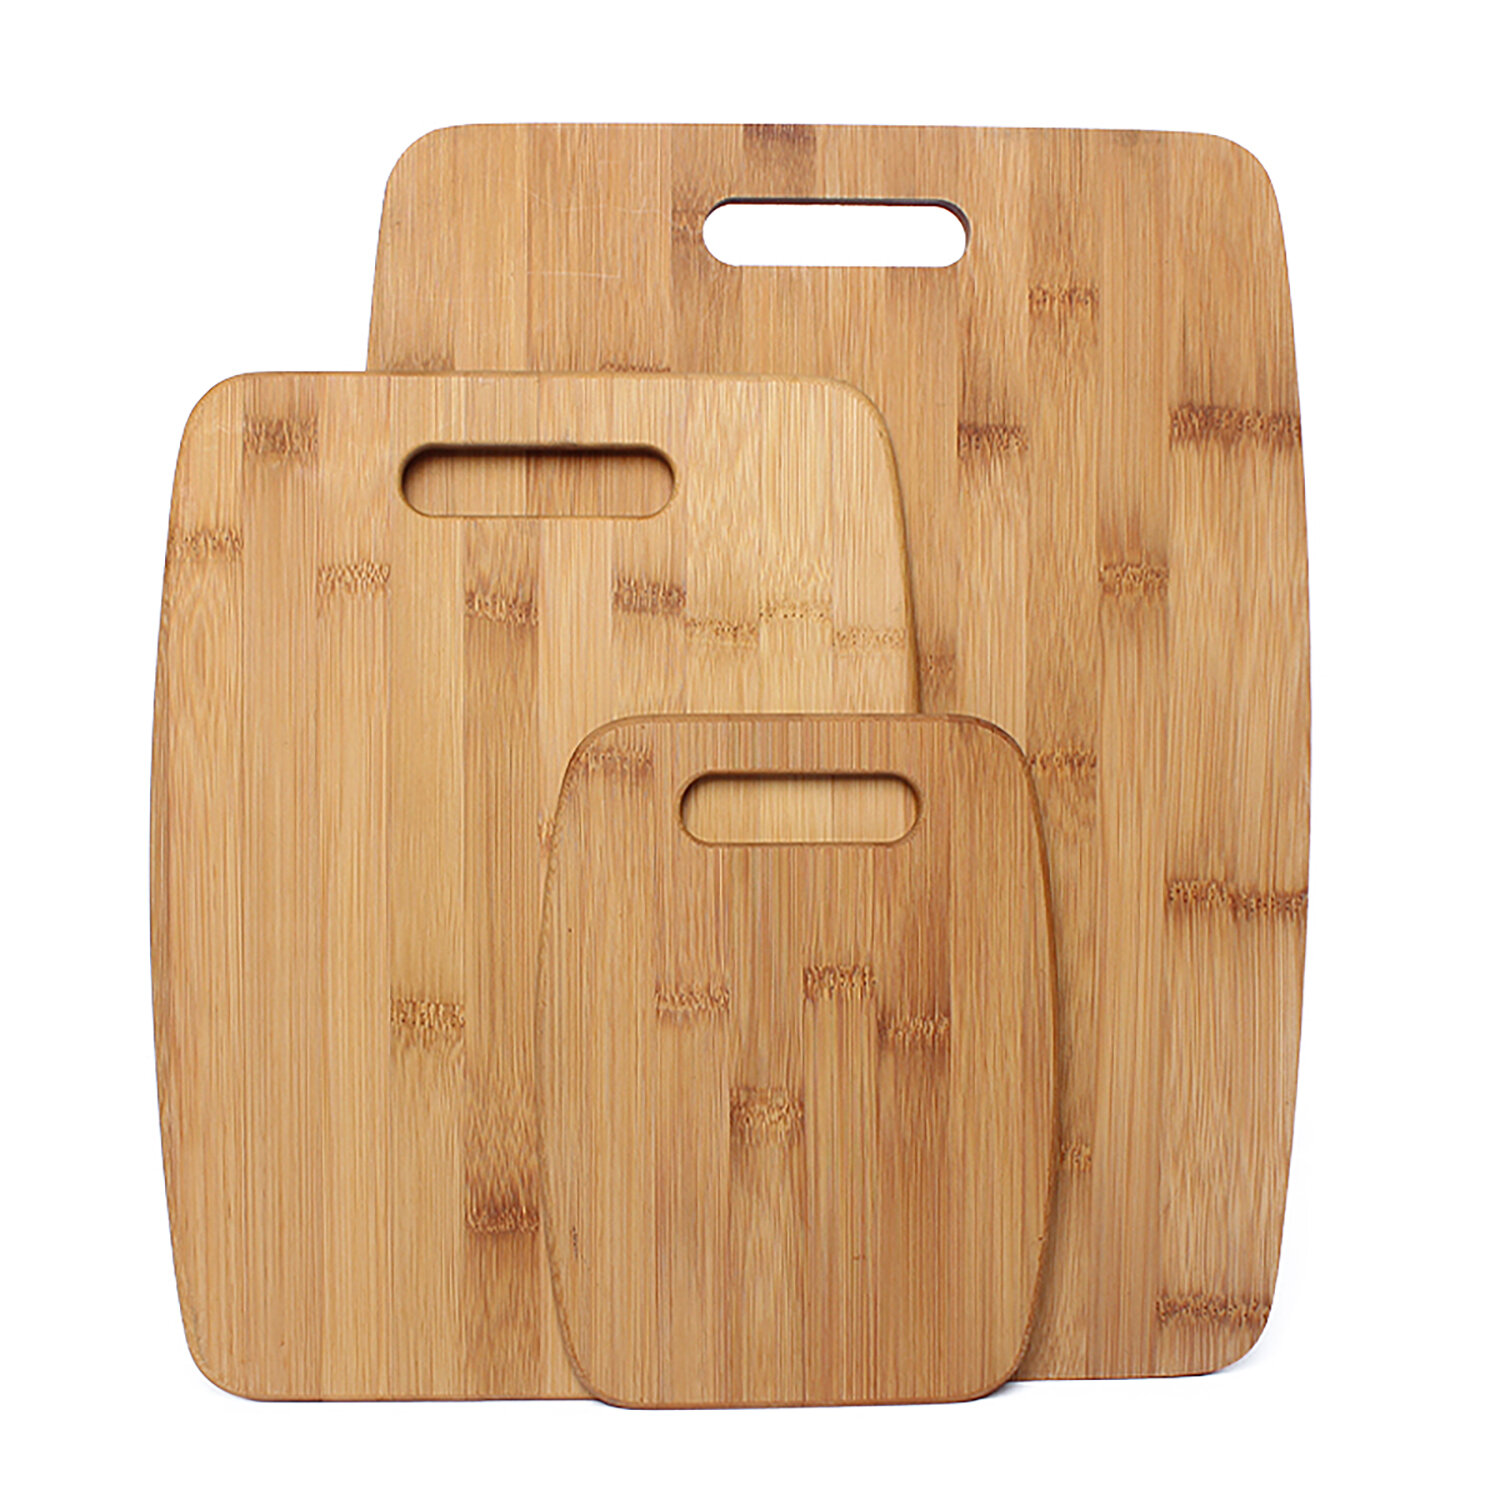 https://assets.wfcdn.com/im/93532899/compr-r85/1490/149064445/gourmet-edge-3-piece-bamboo-cutting-board-set.jpg